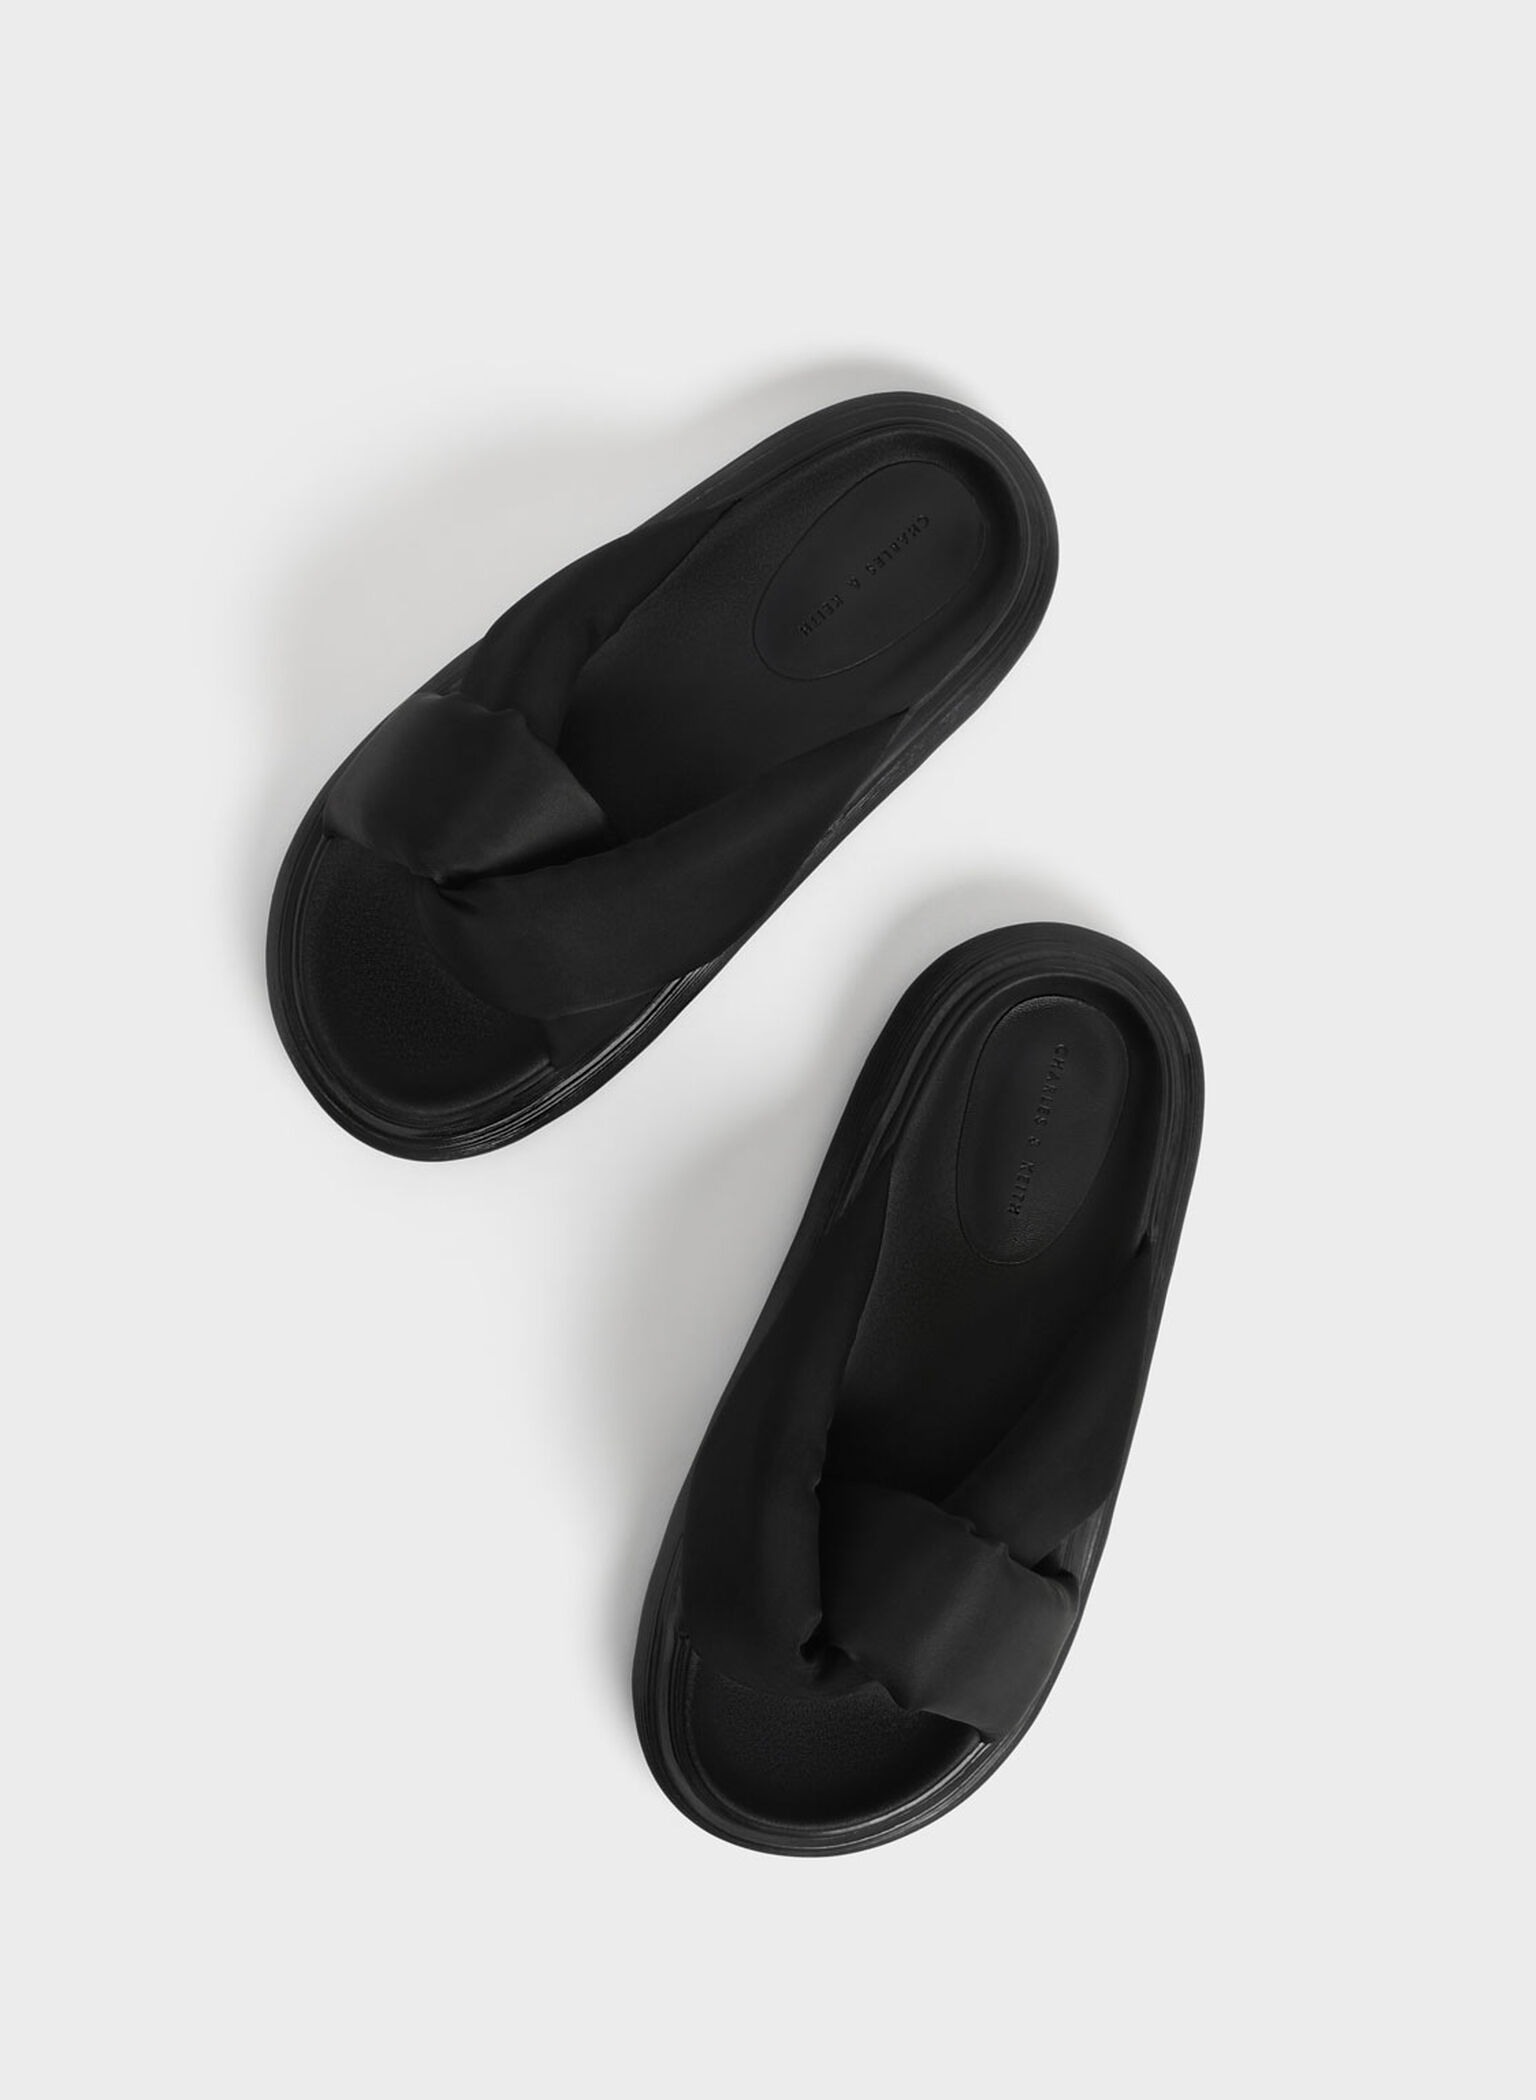 Odessa Nylon Round-Toe Slide Sandals, Black, hi-res